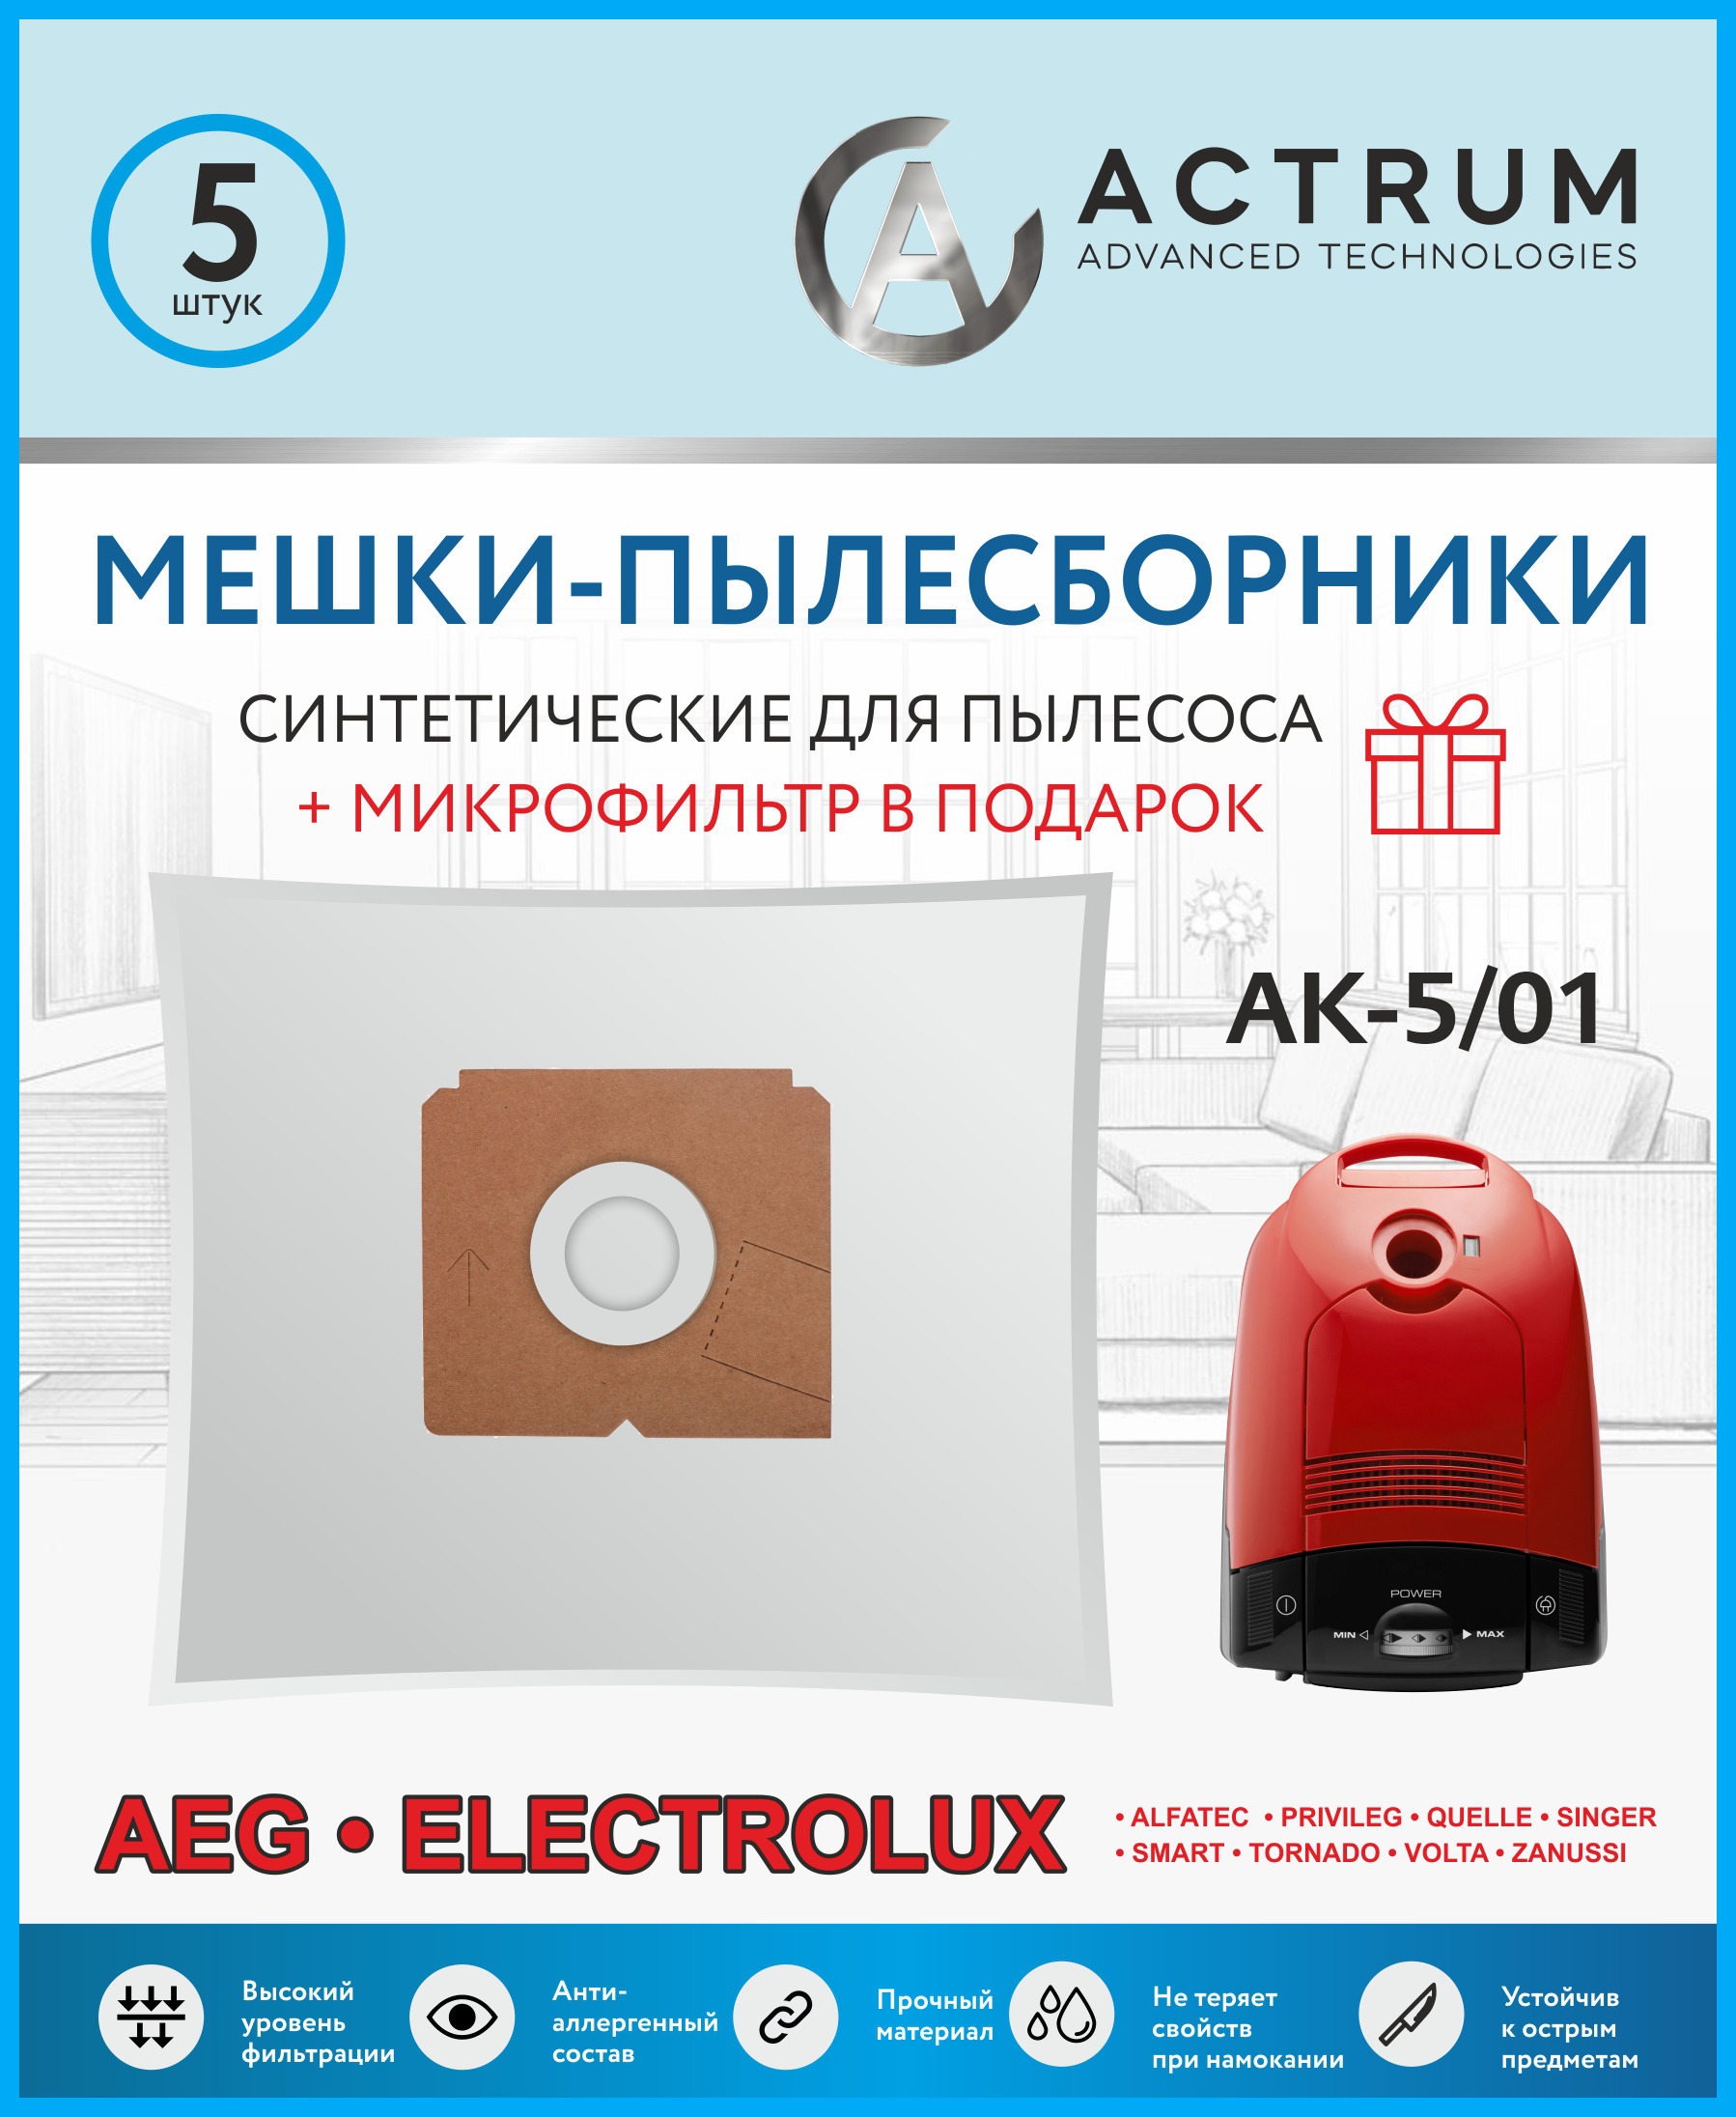 Пылесборник ACTRUM AK-5/01 + микрофильтр пылесборник для zelmer actrum ak 5 53 5 шт